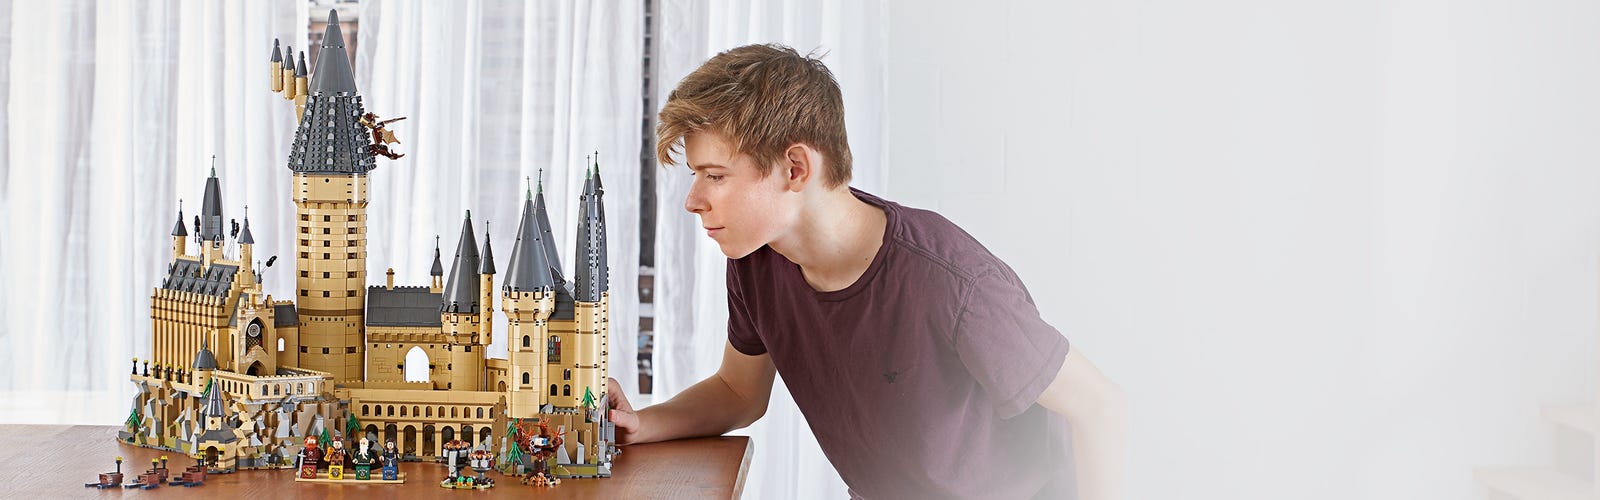 Lego Harry Potter 71043 - O Castelo De Hogwarts 6020 Peças